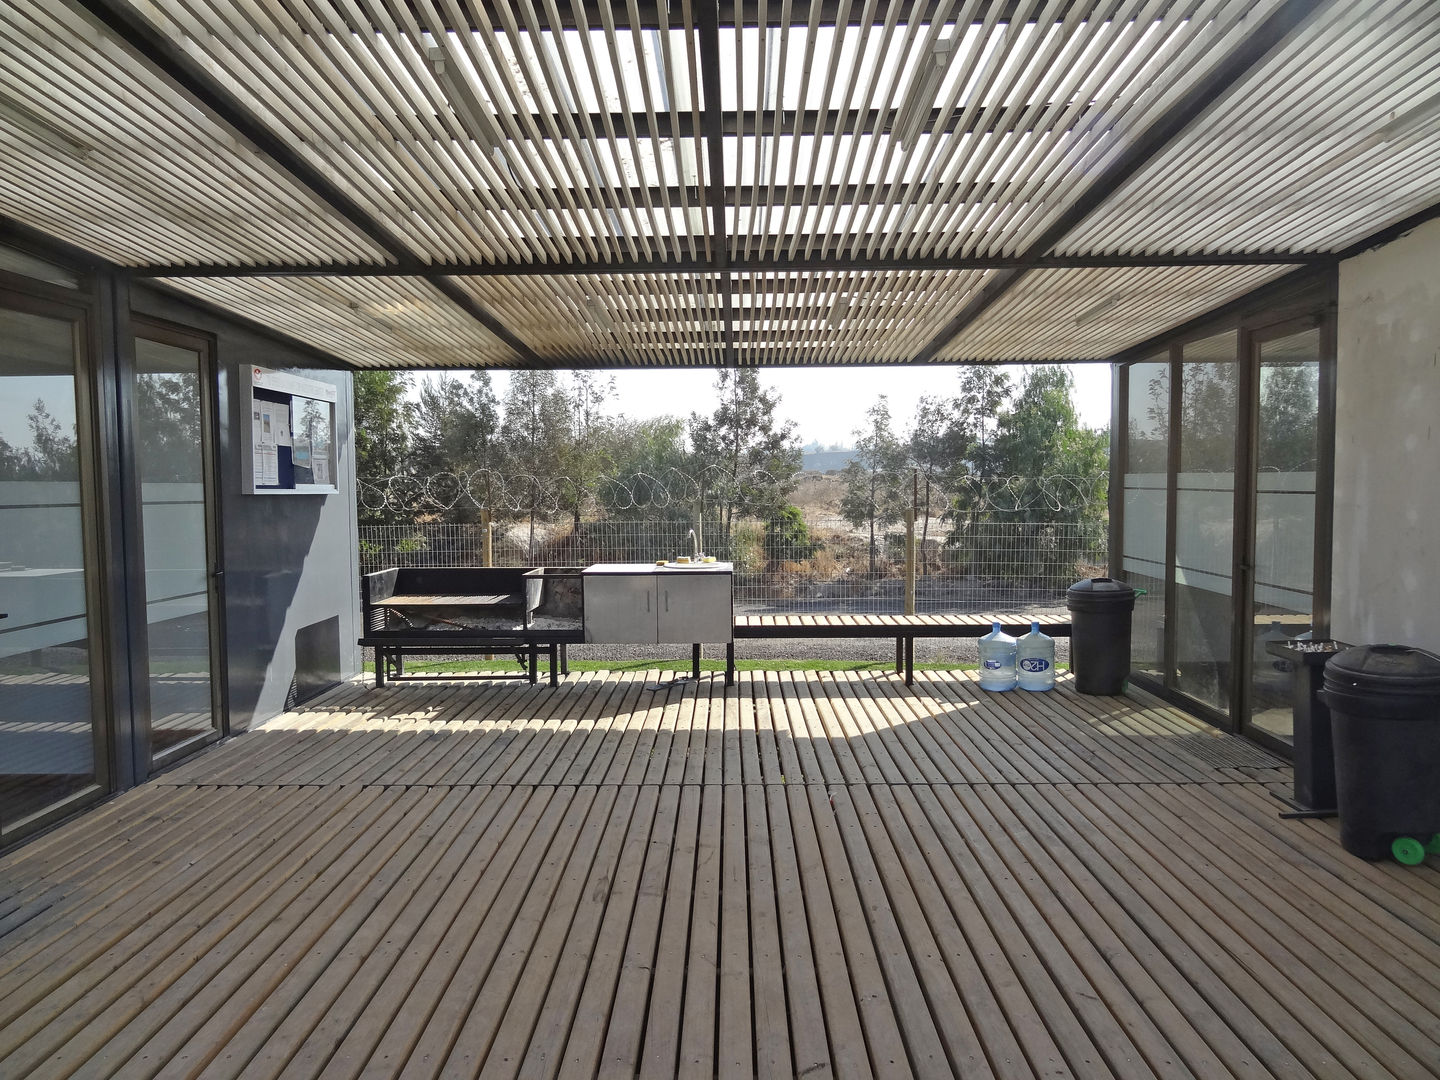 Oficinas Modulares Transportables, m2 estudio arquitectos - Santiago m2 estudio arquitectos - Santiago درج